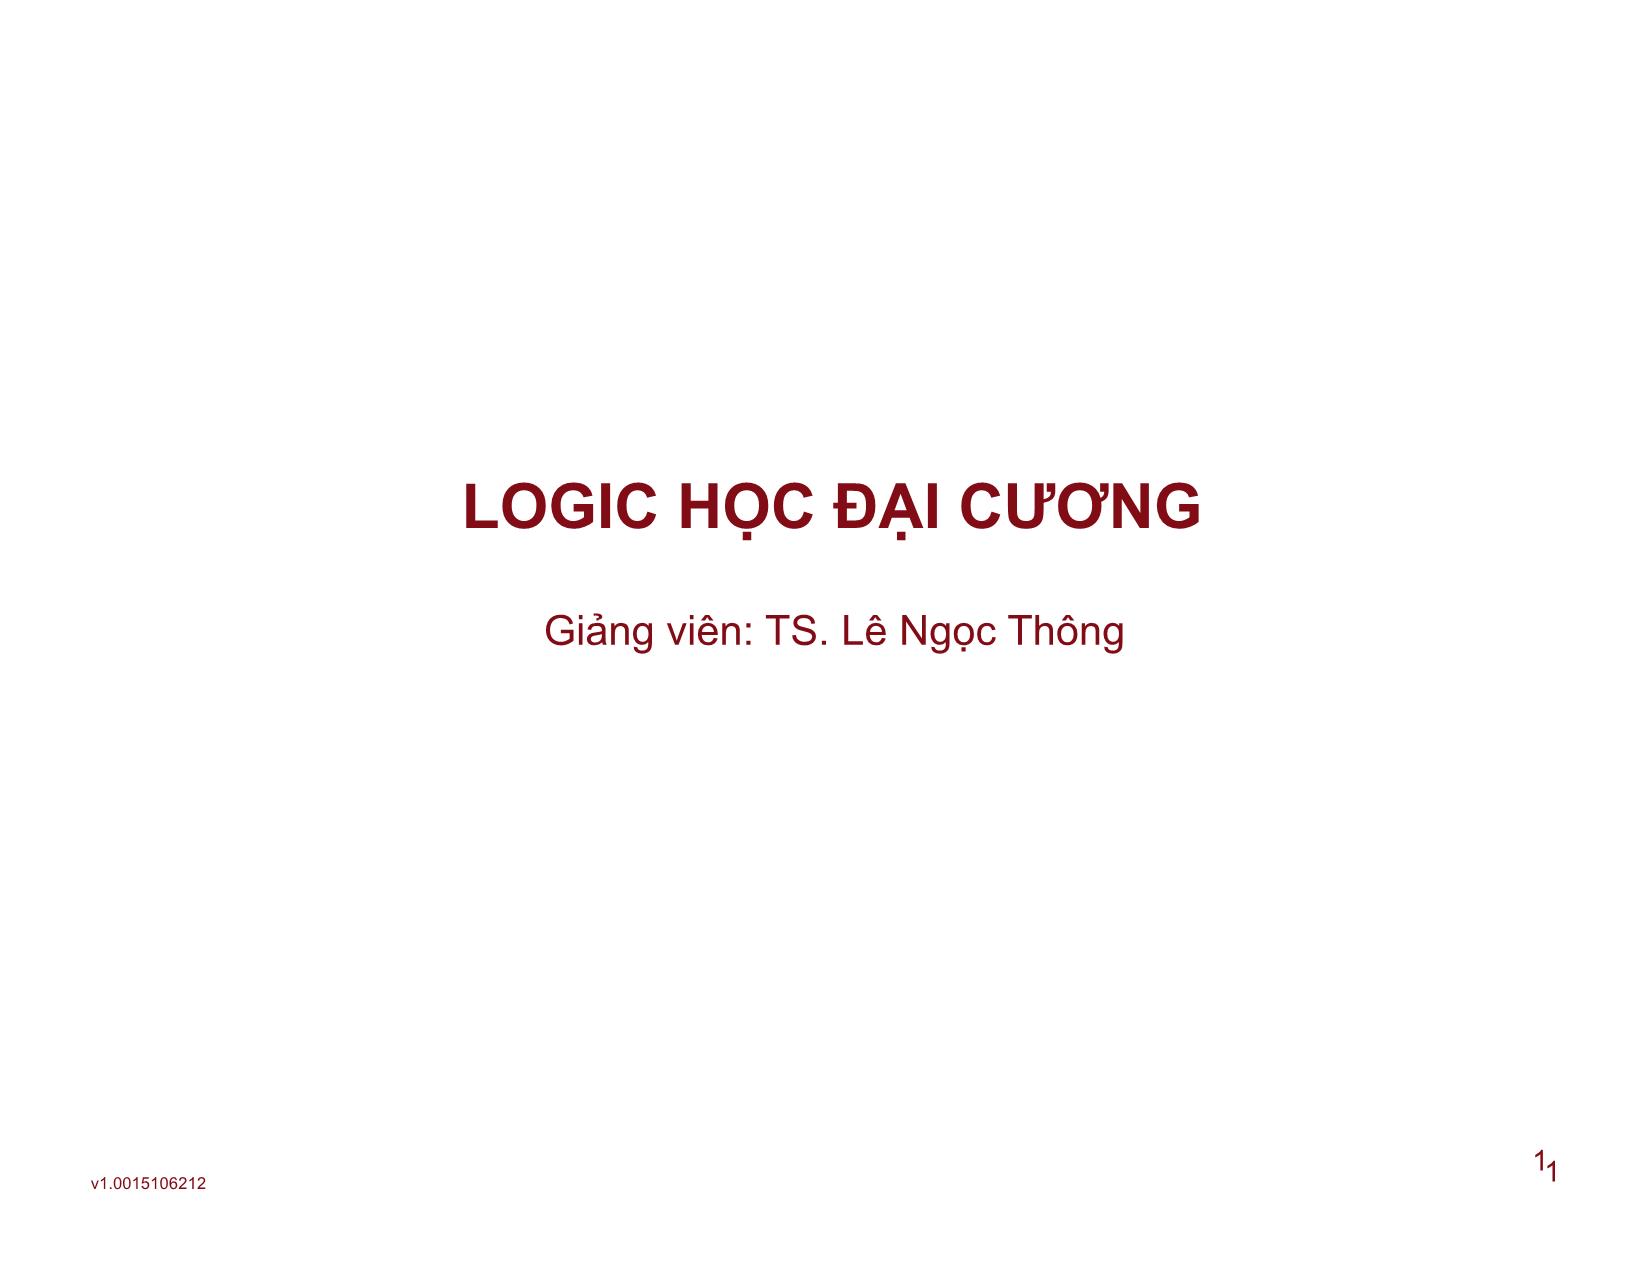 Logic học đại cương - Bài 3: Hình thức tư duy phán đoán trang 1